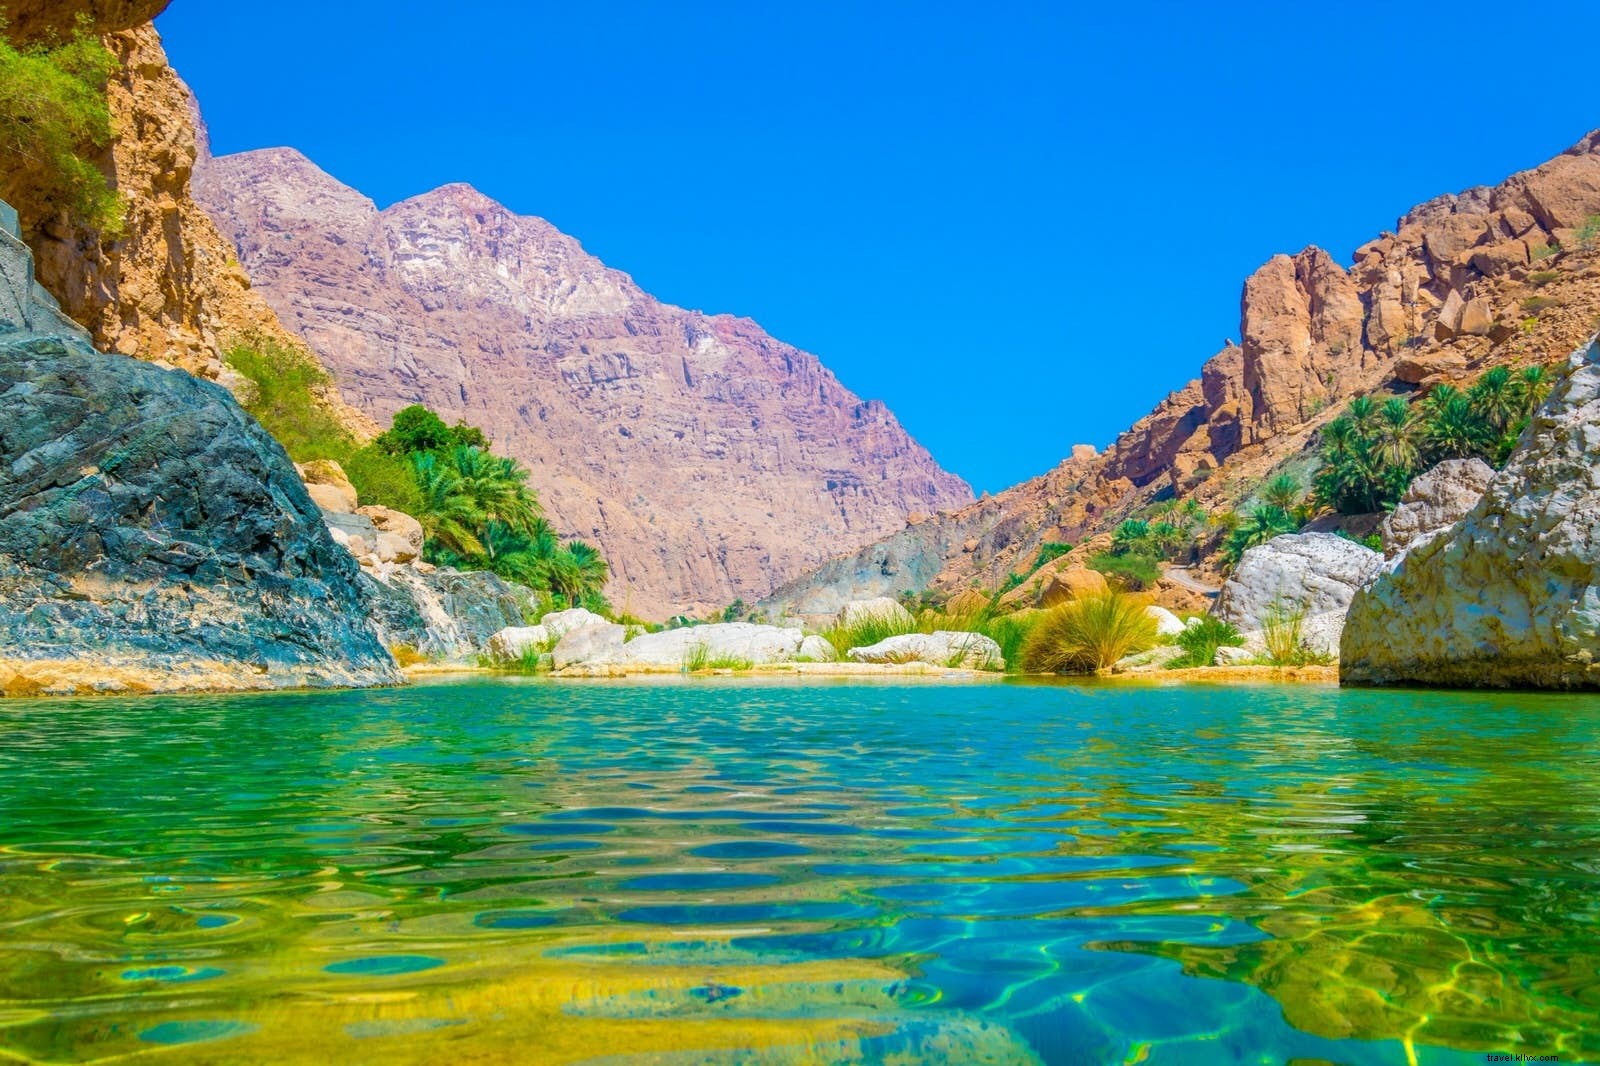 Merveilleux oueds :visite du « désert vertical » d Oman 